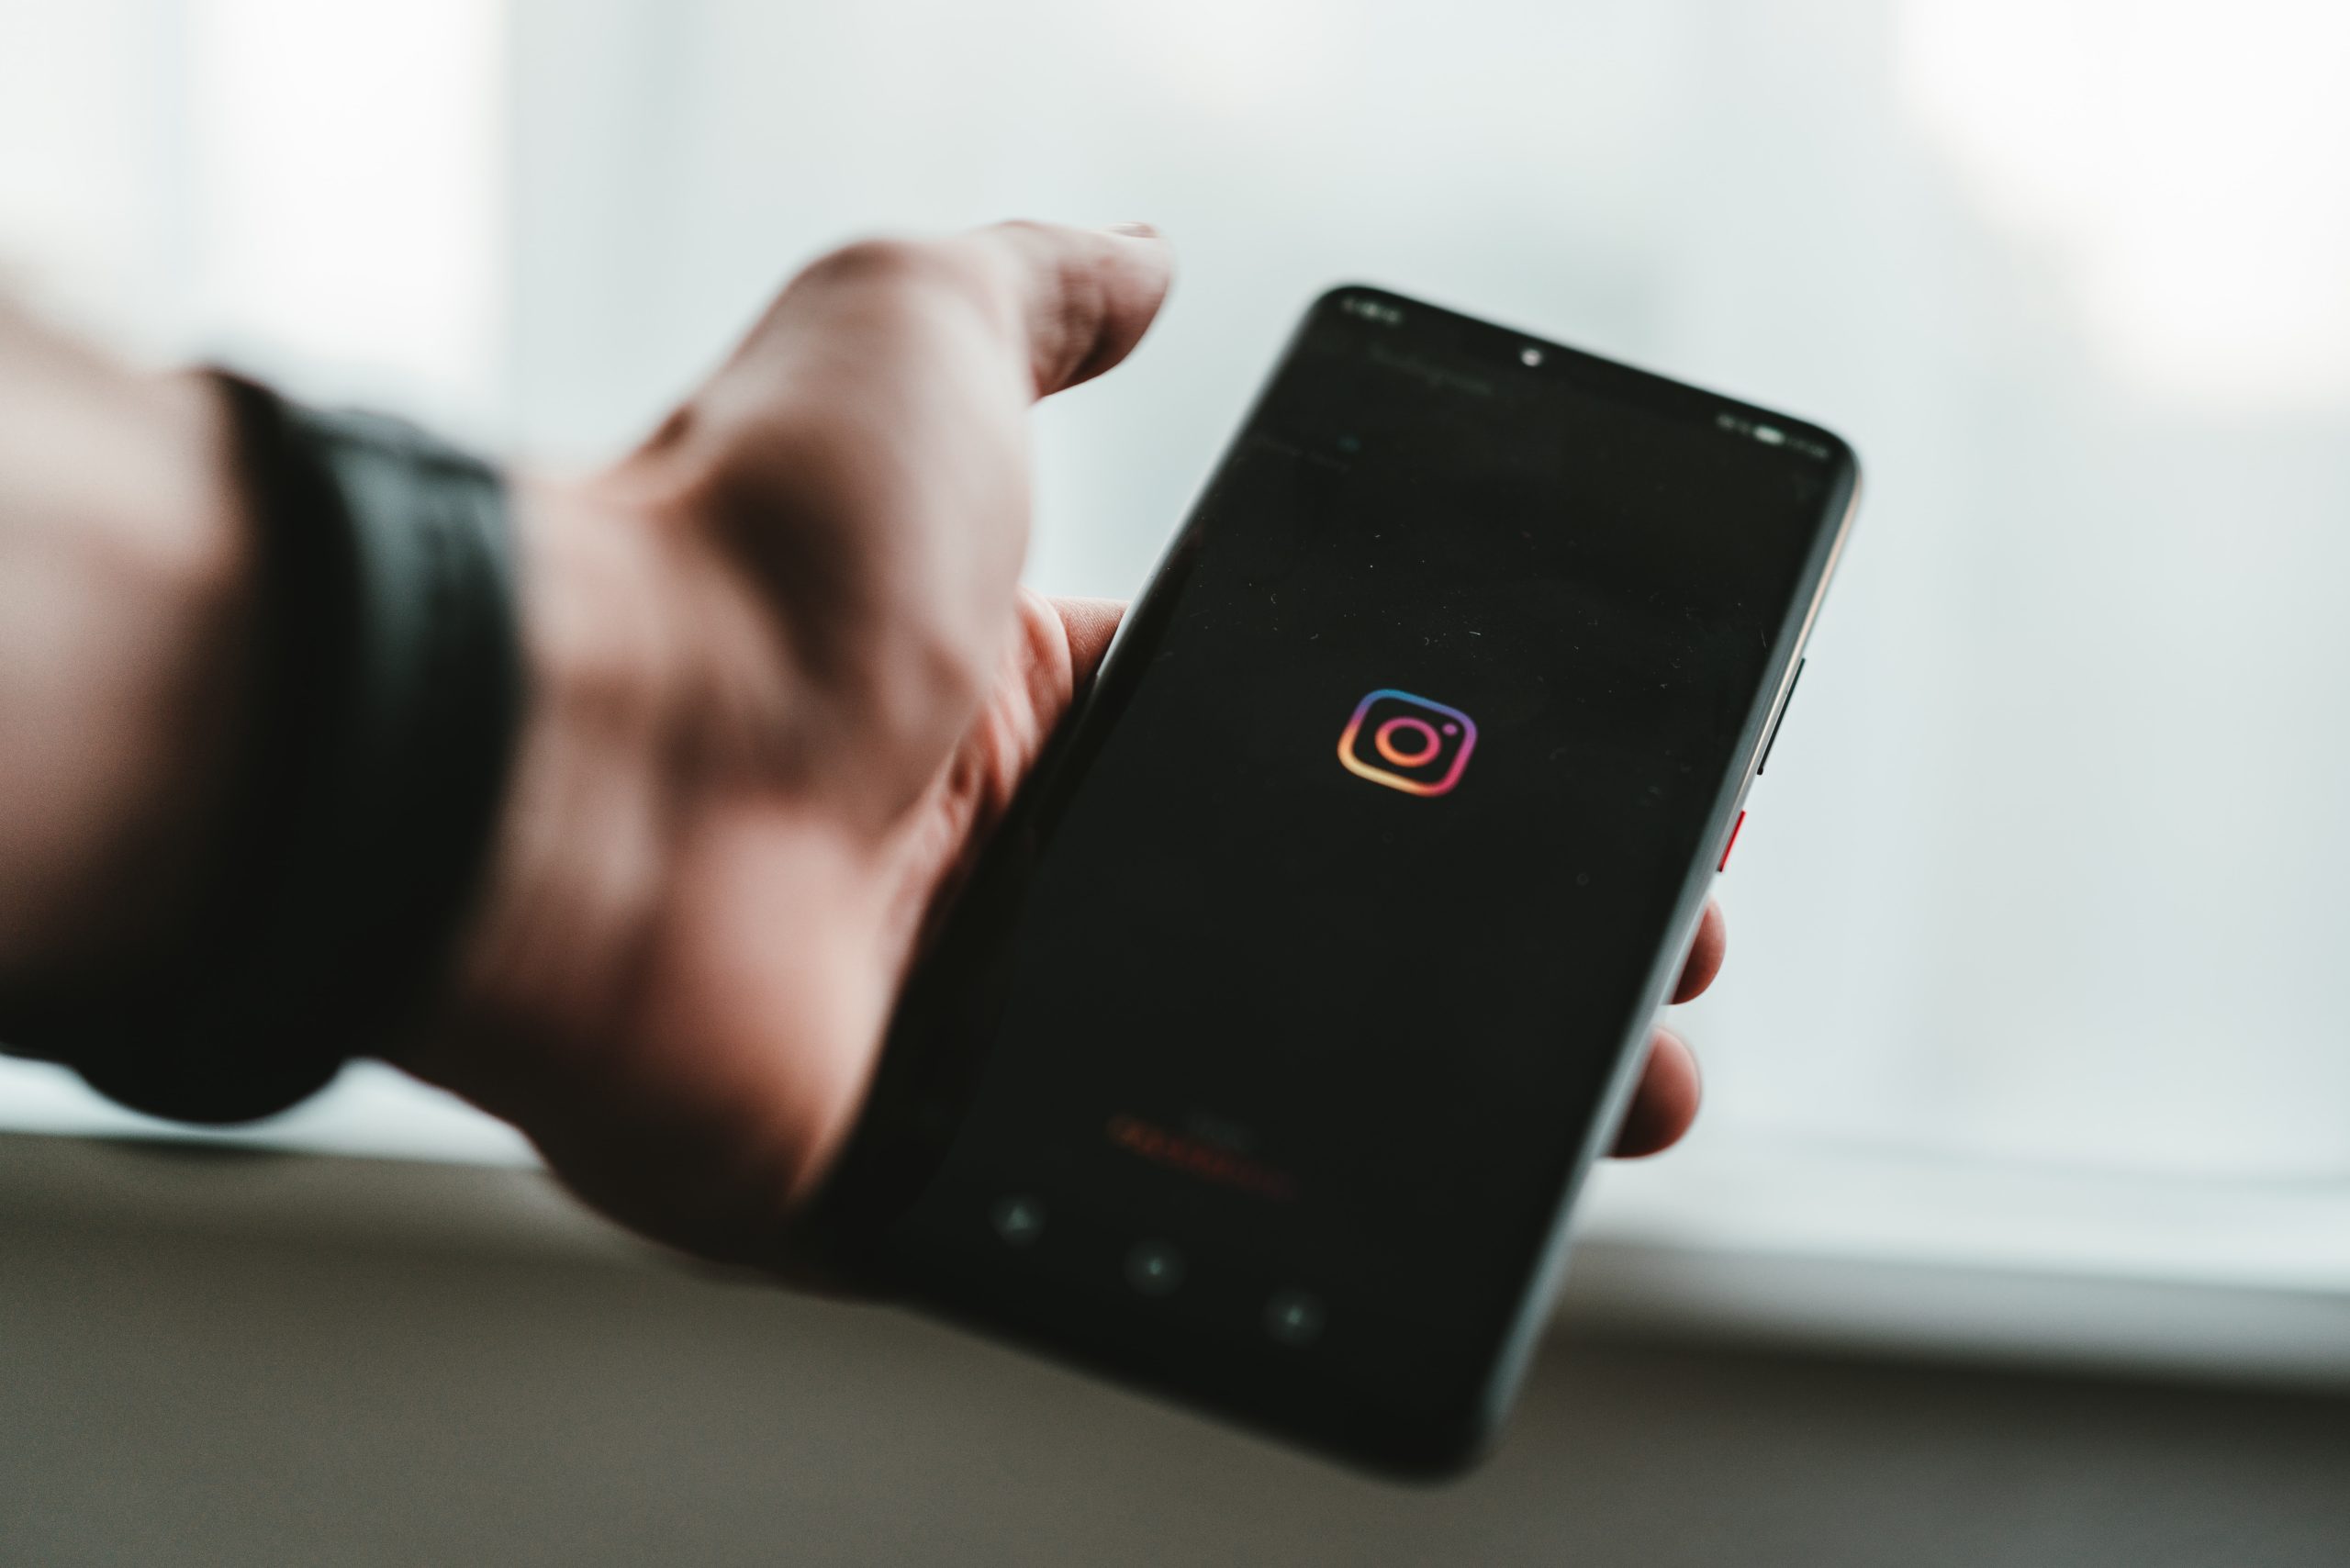 Instagram's Built-in Features